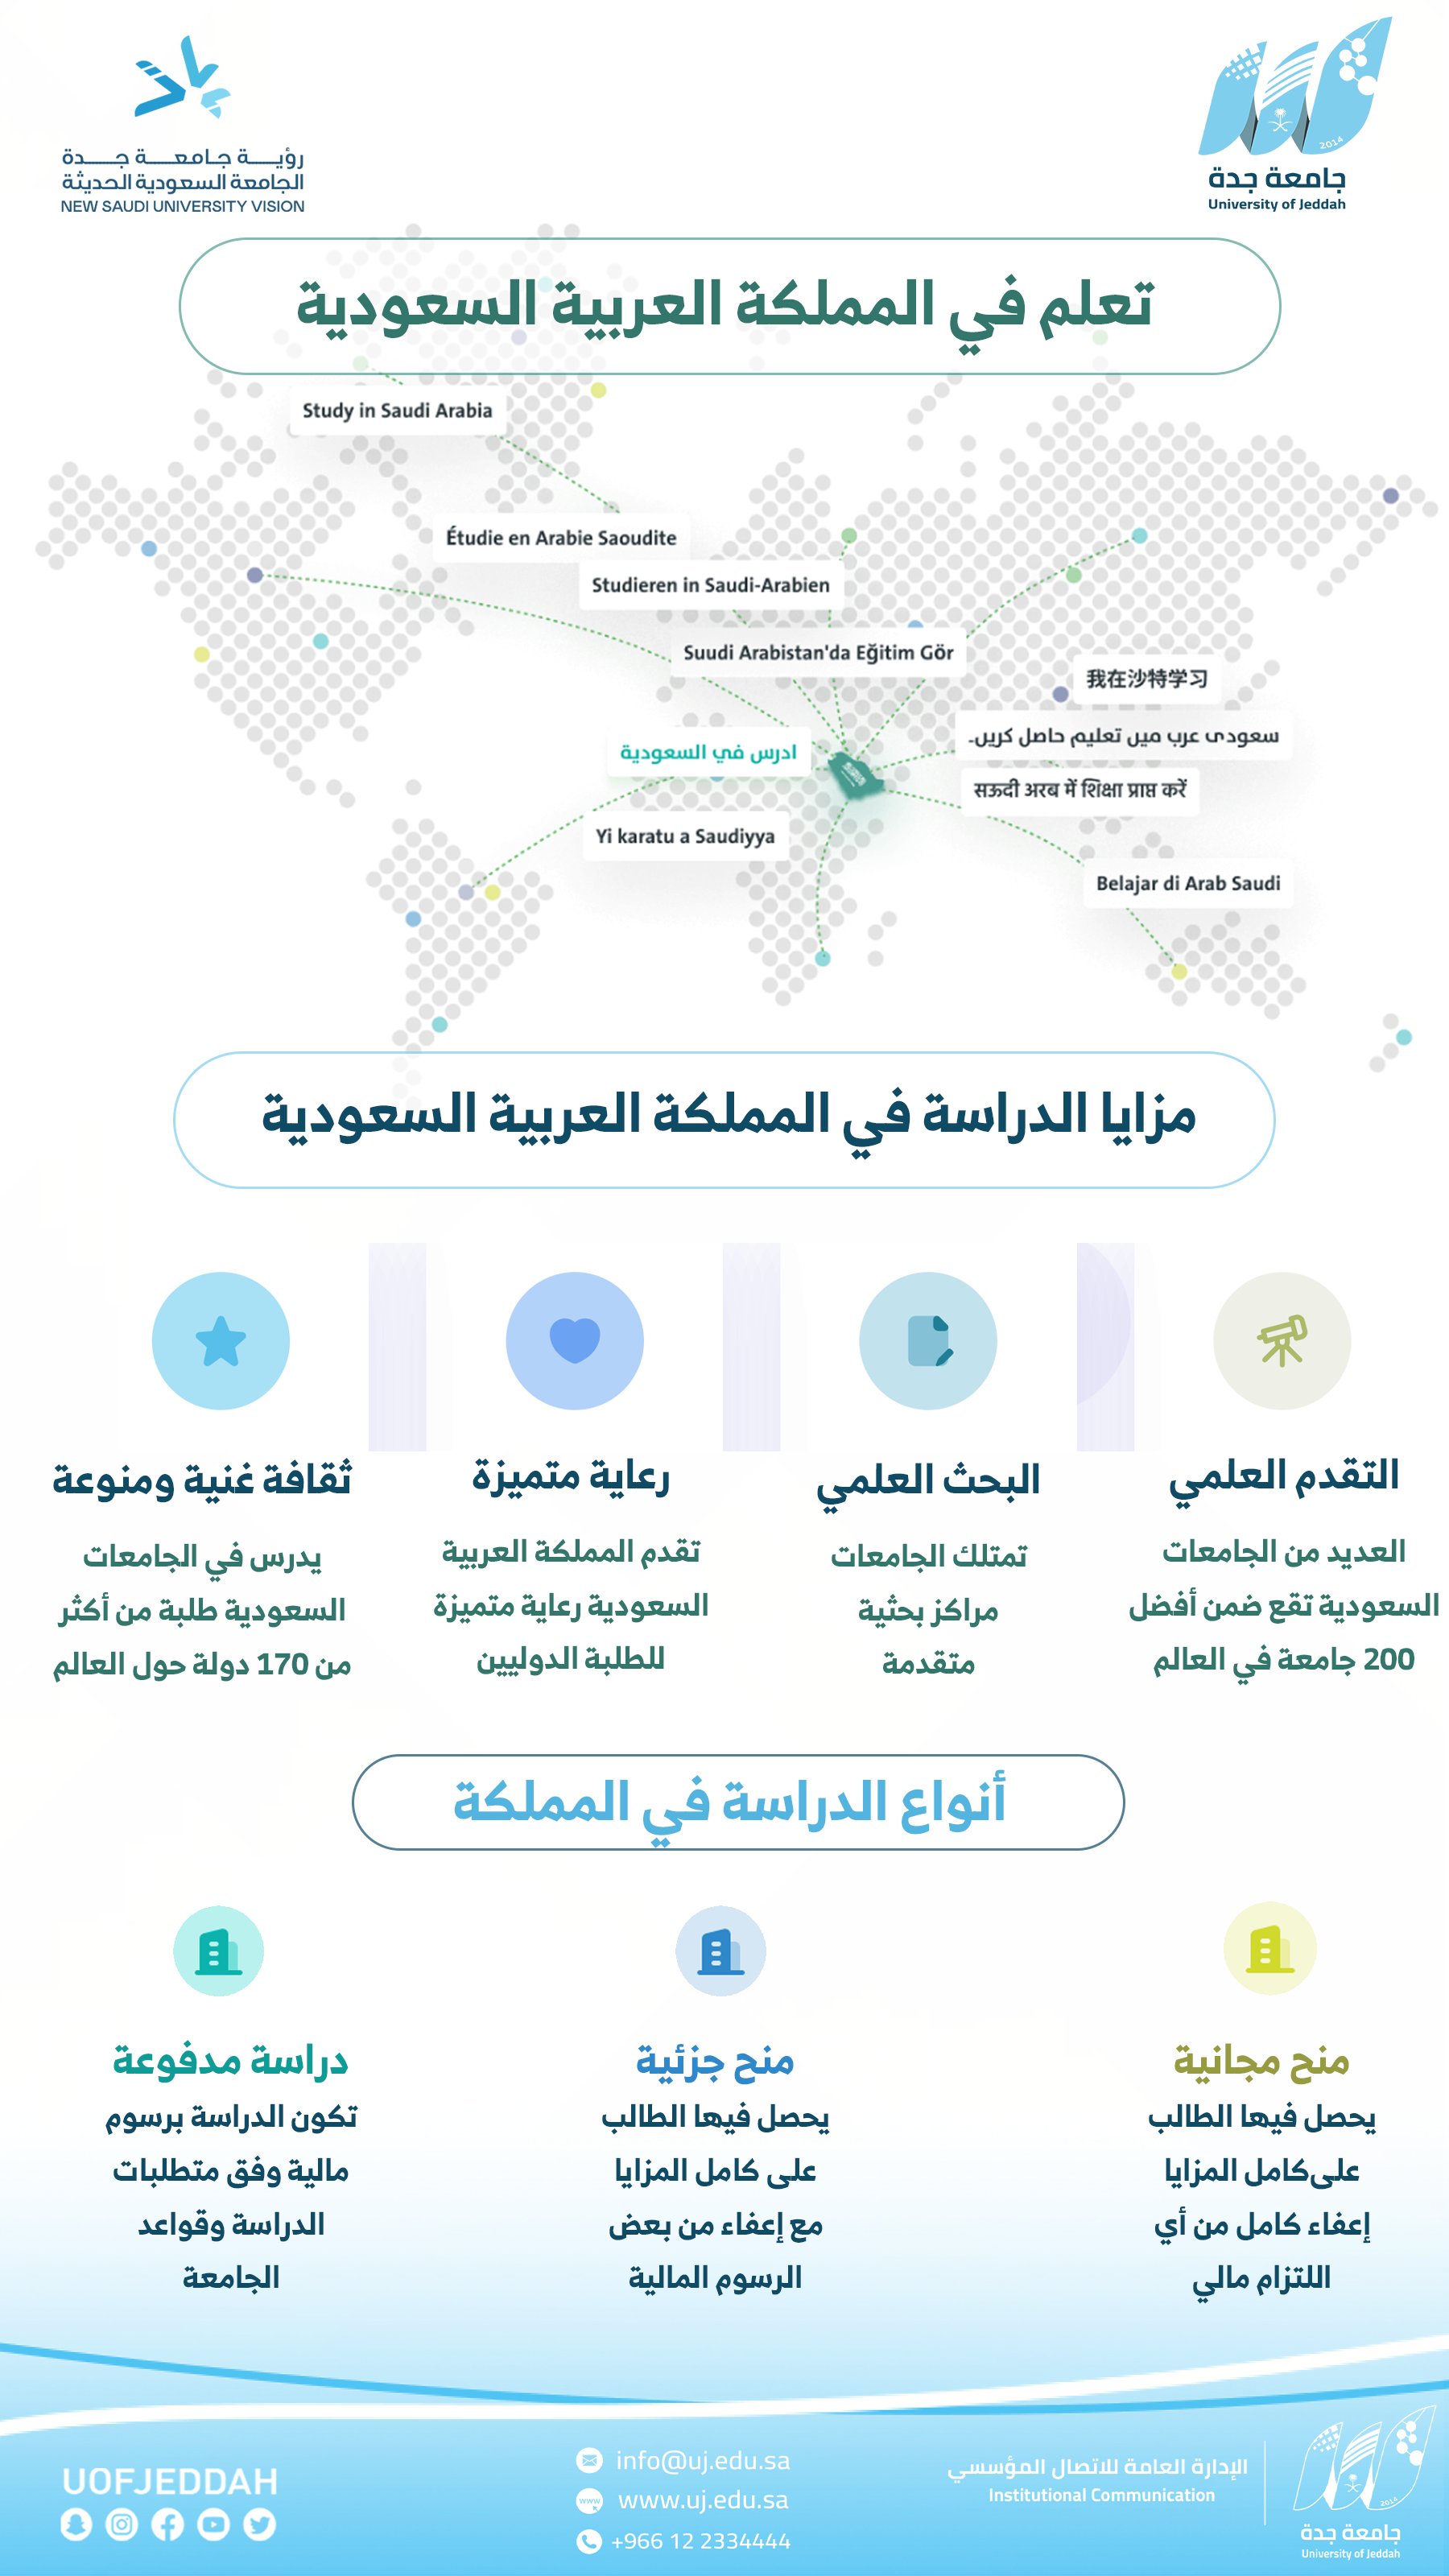 وزارة التعليم تتيح التقديم على الدراسة في الجامعات السعودية للطلاب الدوليين من خارج المملكة عبر منصة ادرس في السعودية